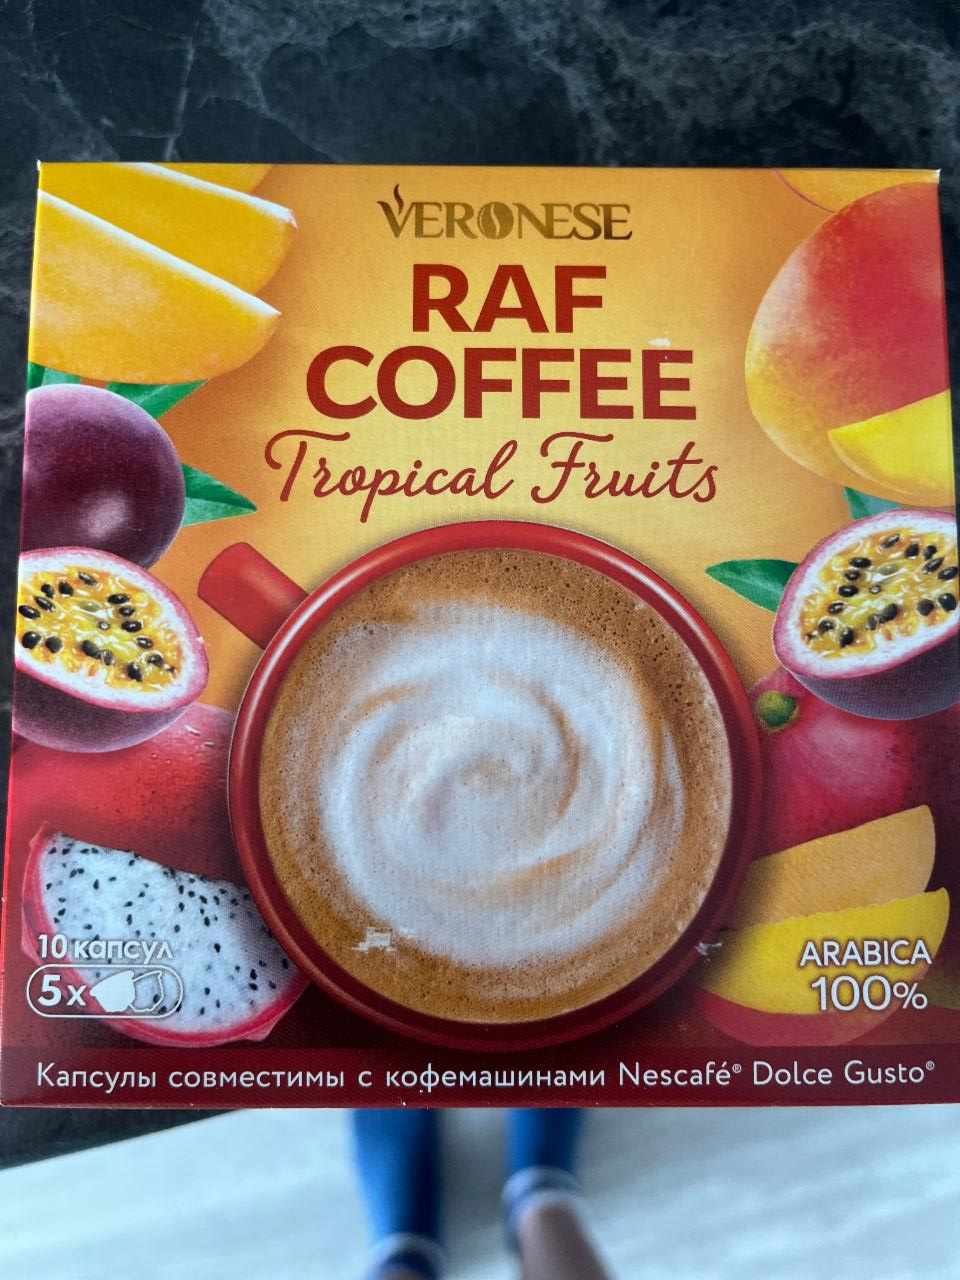 Фото - кофе раф с тропическими фруктами Veronese